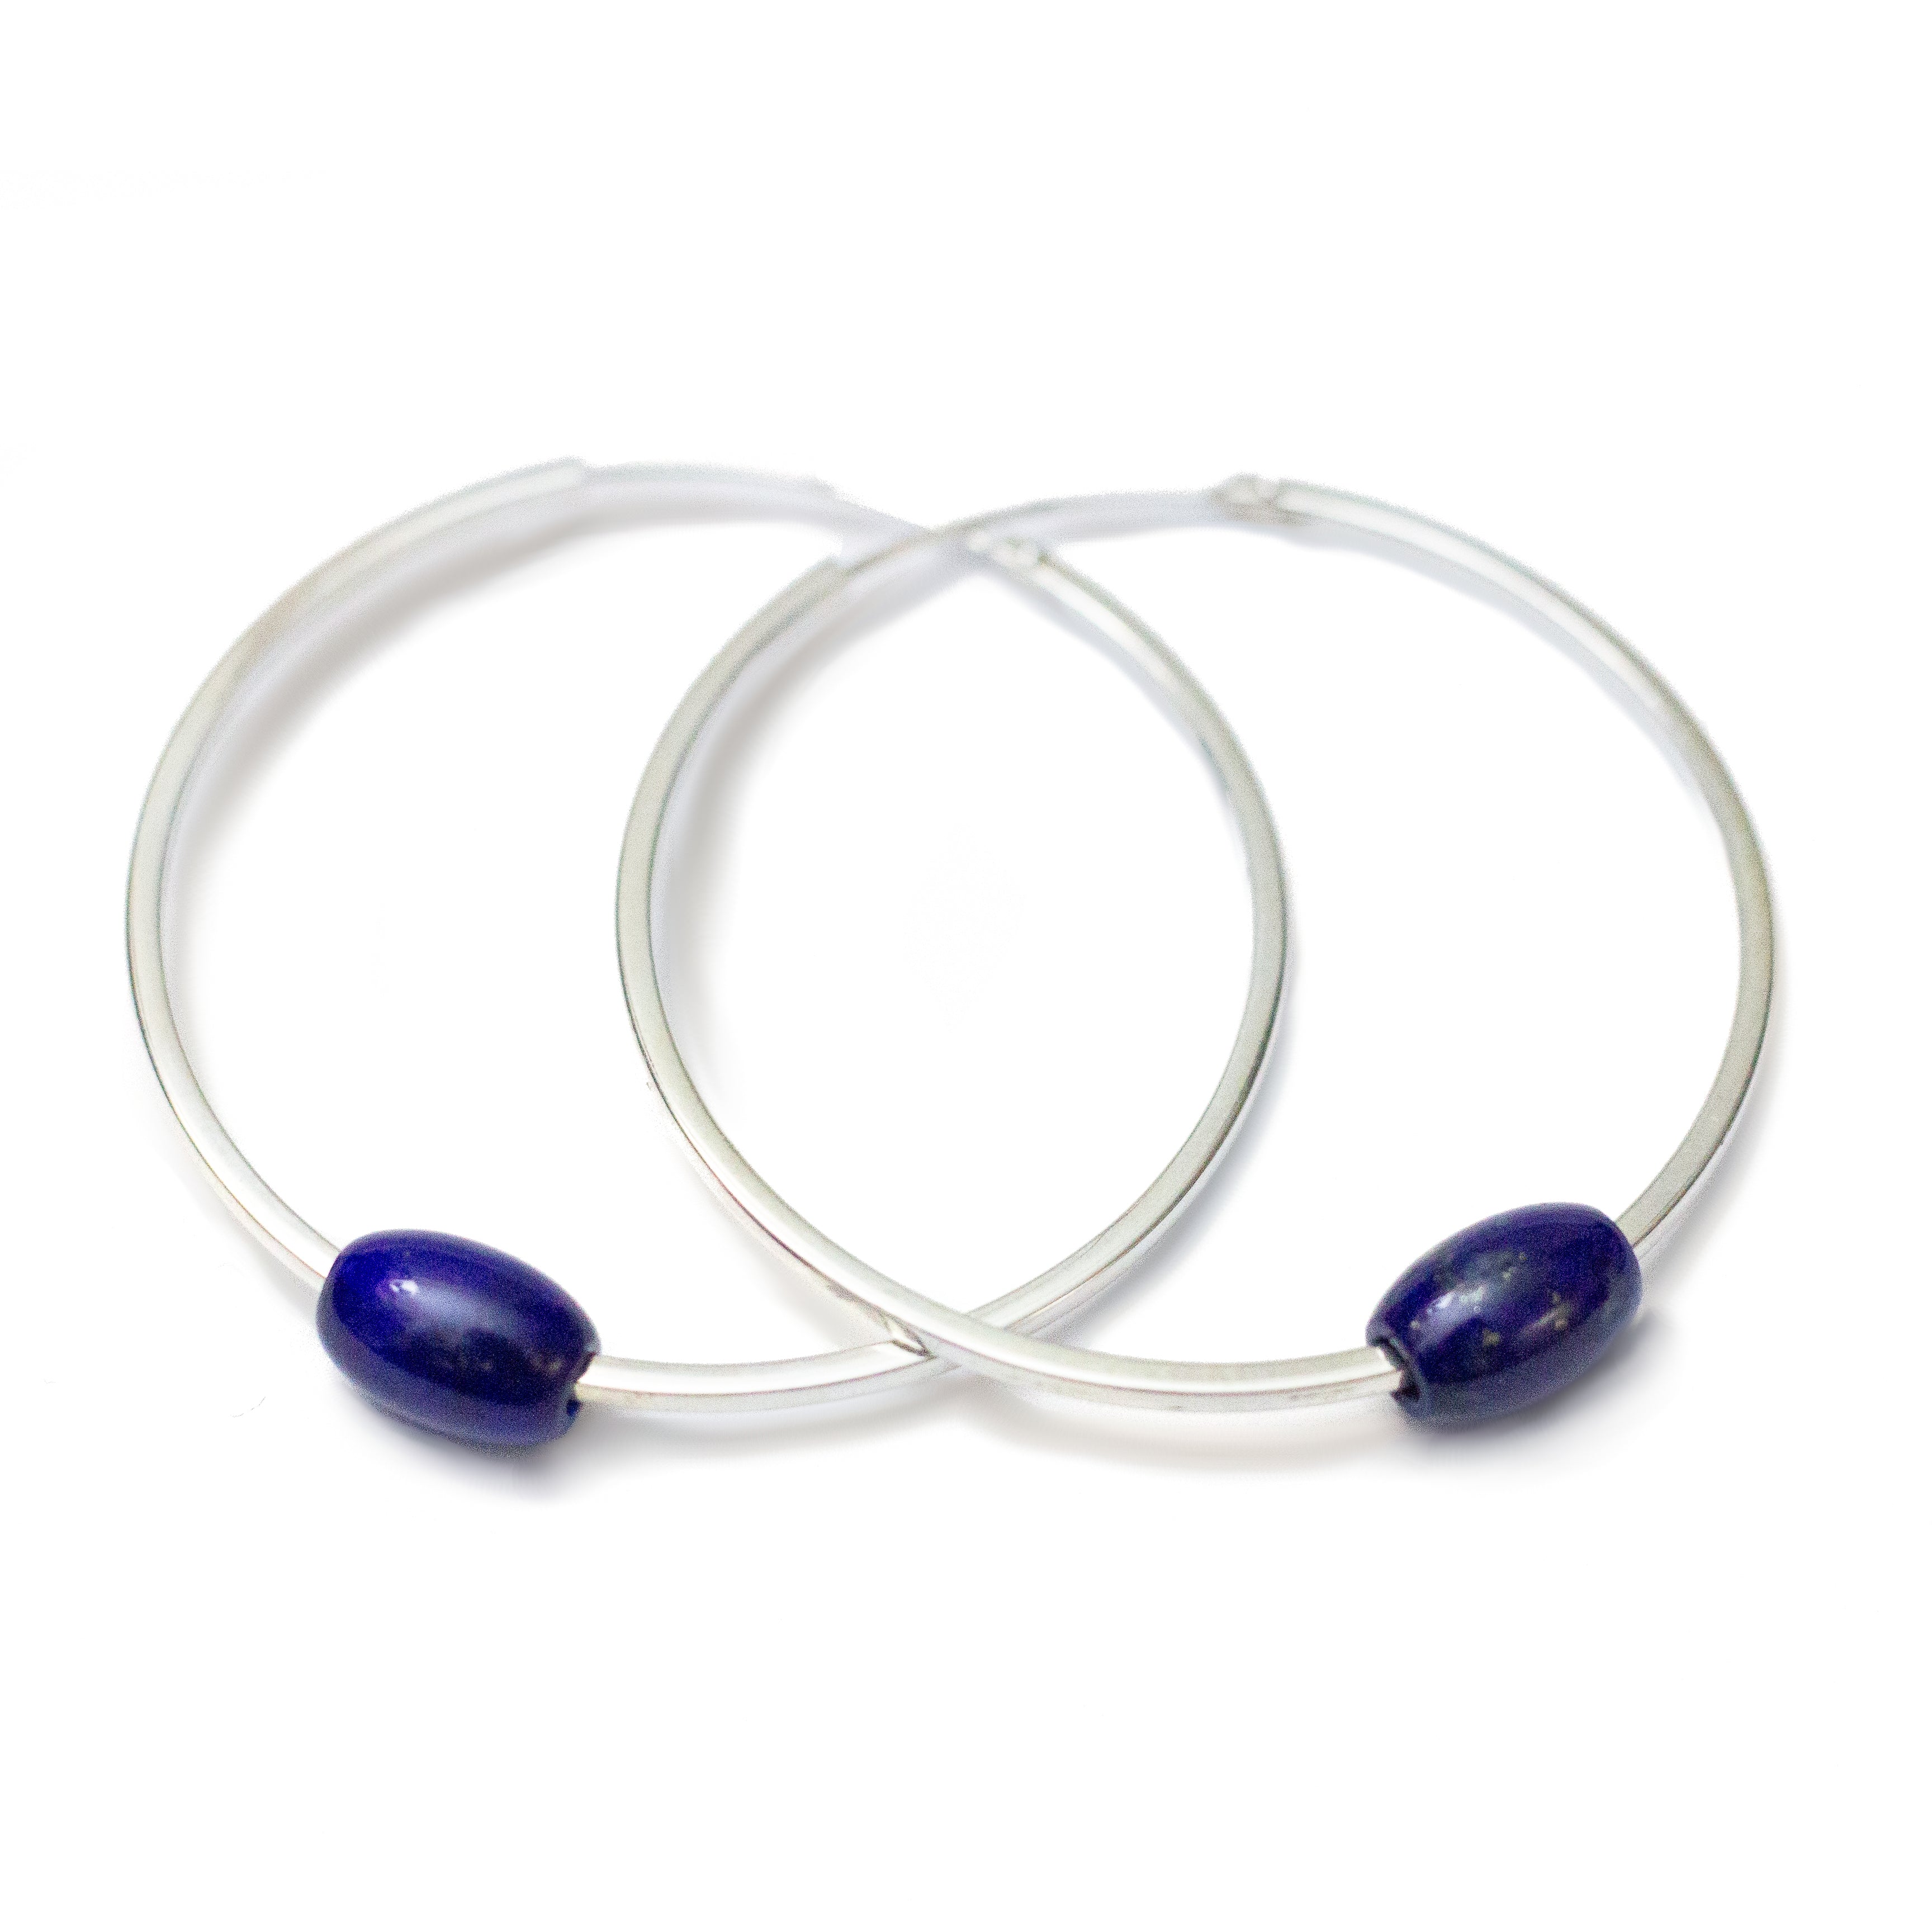 Token Hoop Earrings - Recycled Sterling Silver